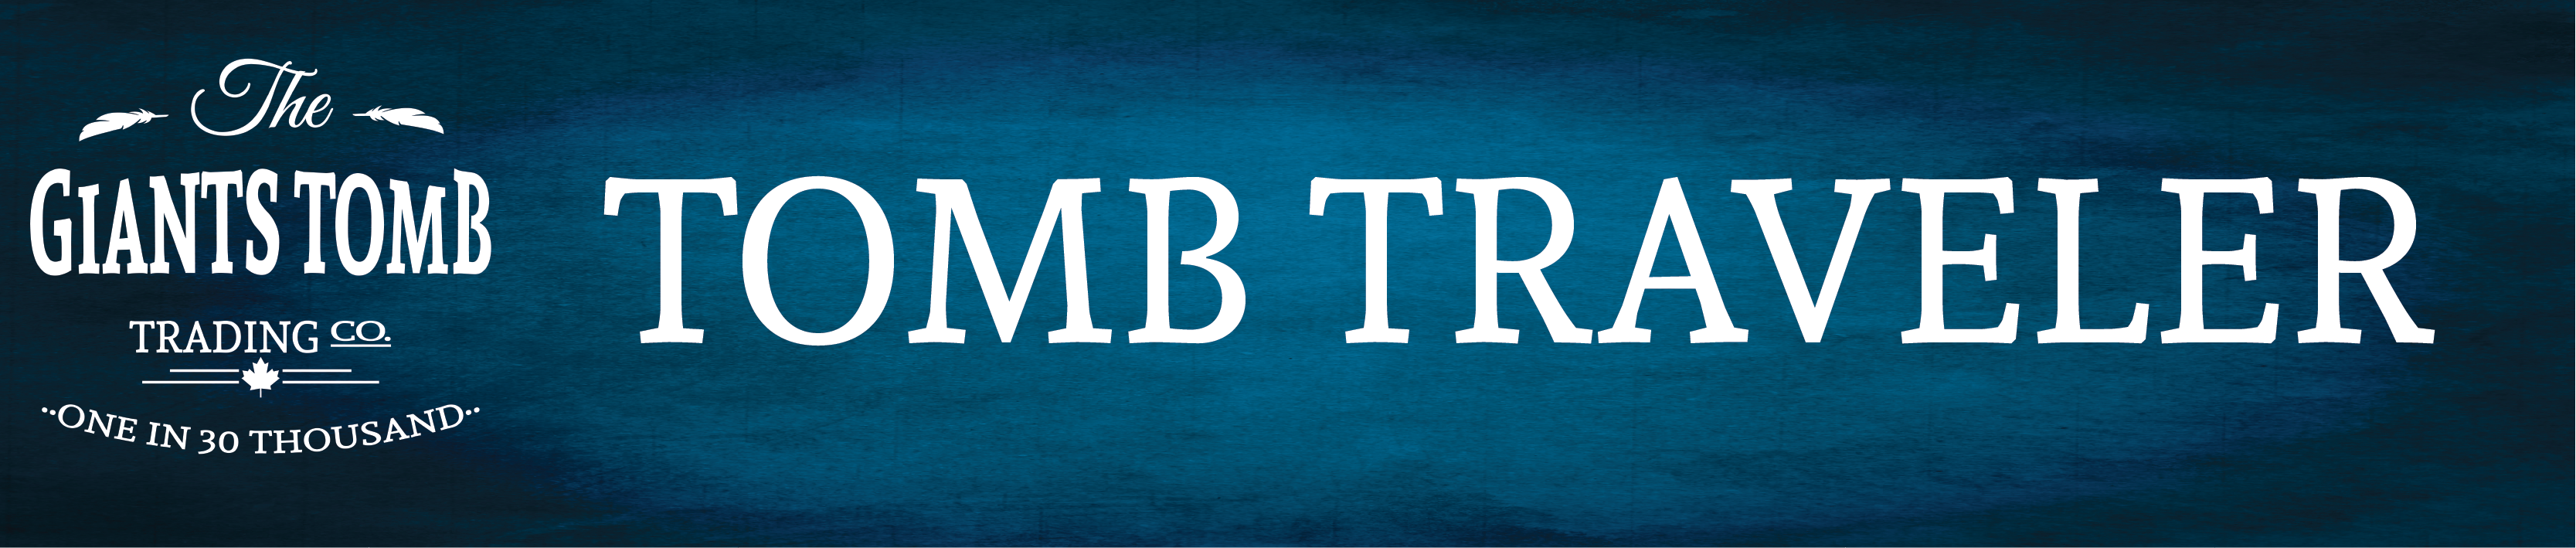 Giants Tomb Trading Co. - Newsletter - Tomb Traveler